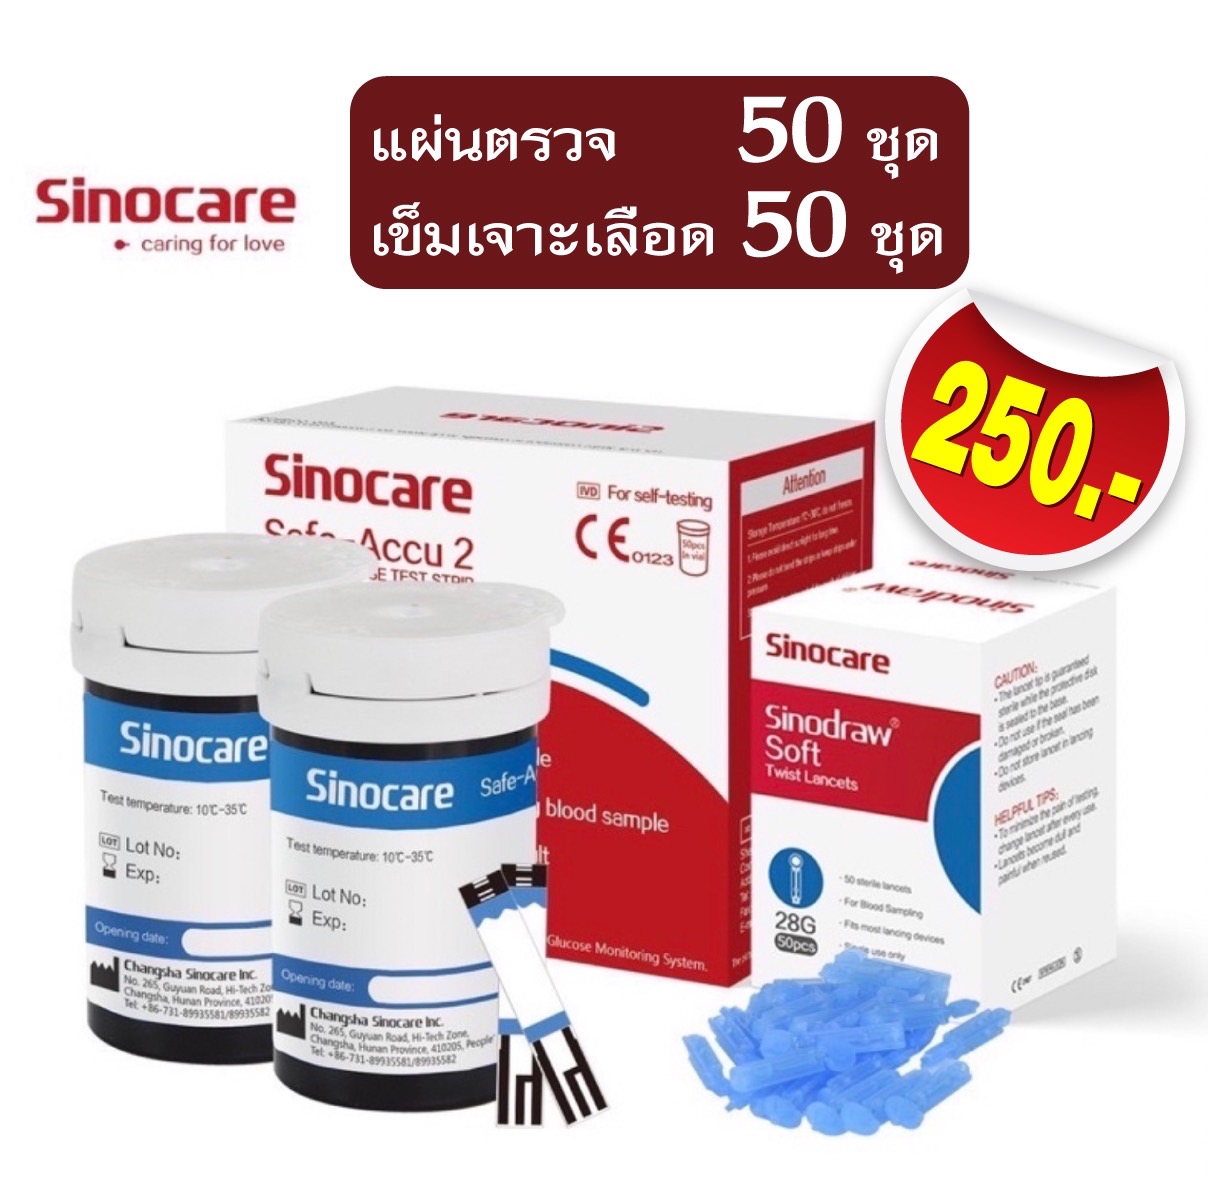 ข้อมูลเพิ่มเติมของ แผ่นสำหรับเครื่องวัดน้ำตาลในเลือด Sinocare รุ่น Safe-accu2